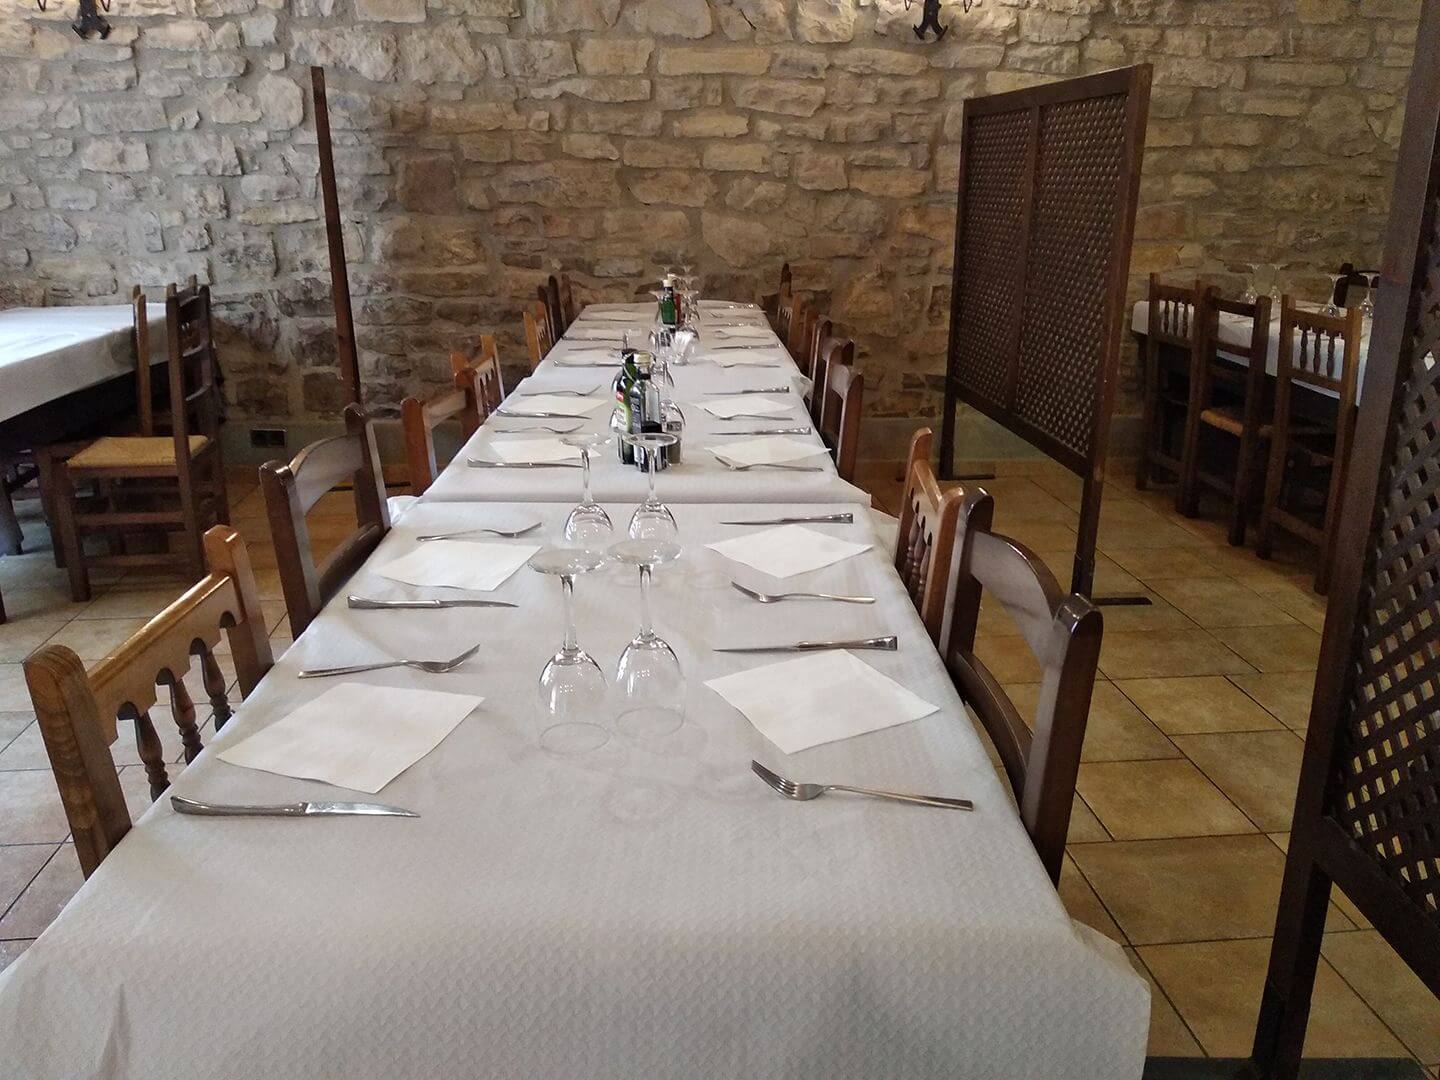 Restaurant Llenegues